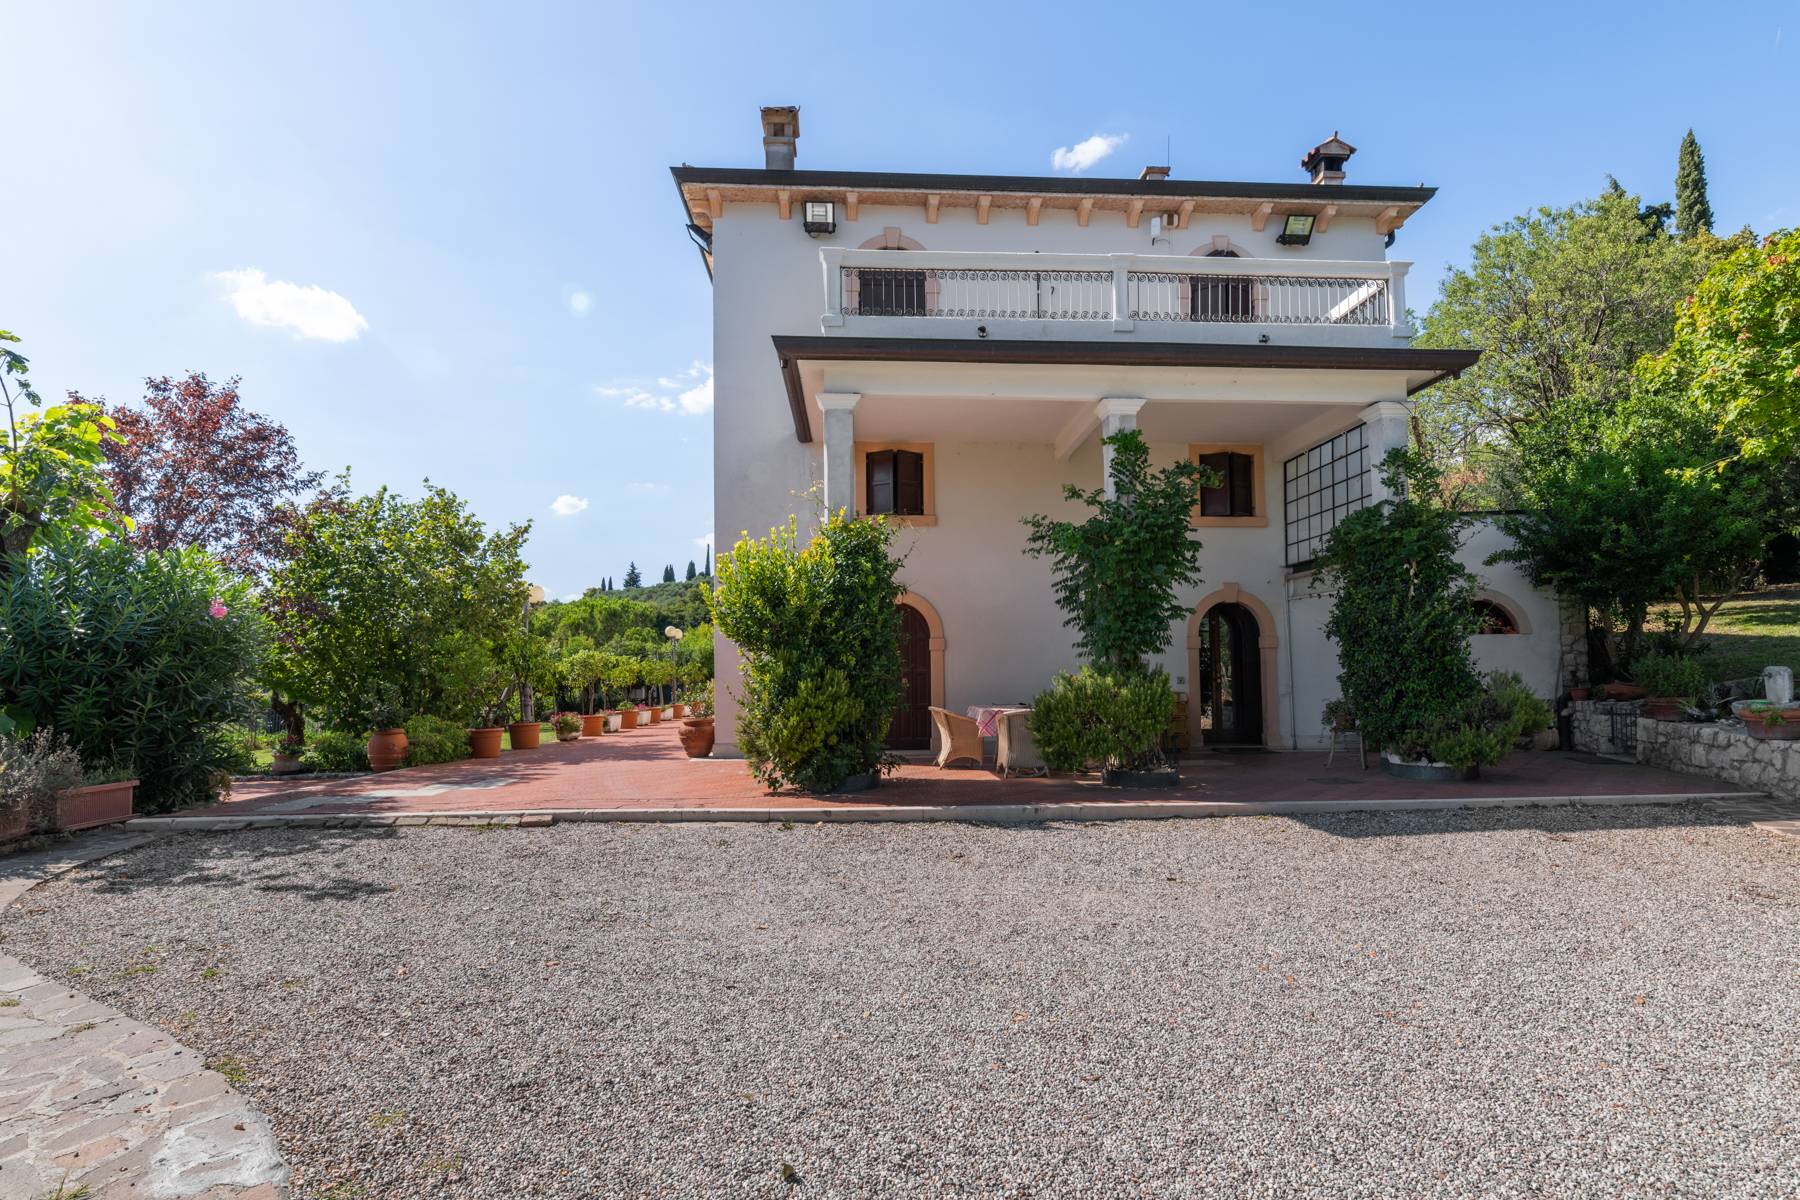 Villa in Vendita a San Martino Buon Albergo: 5 locali, 900 mq - Foto 6